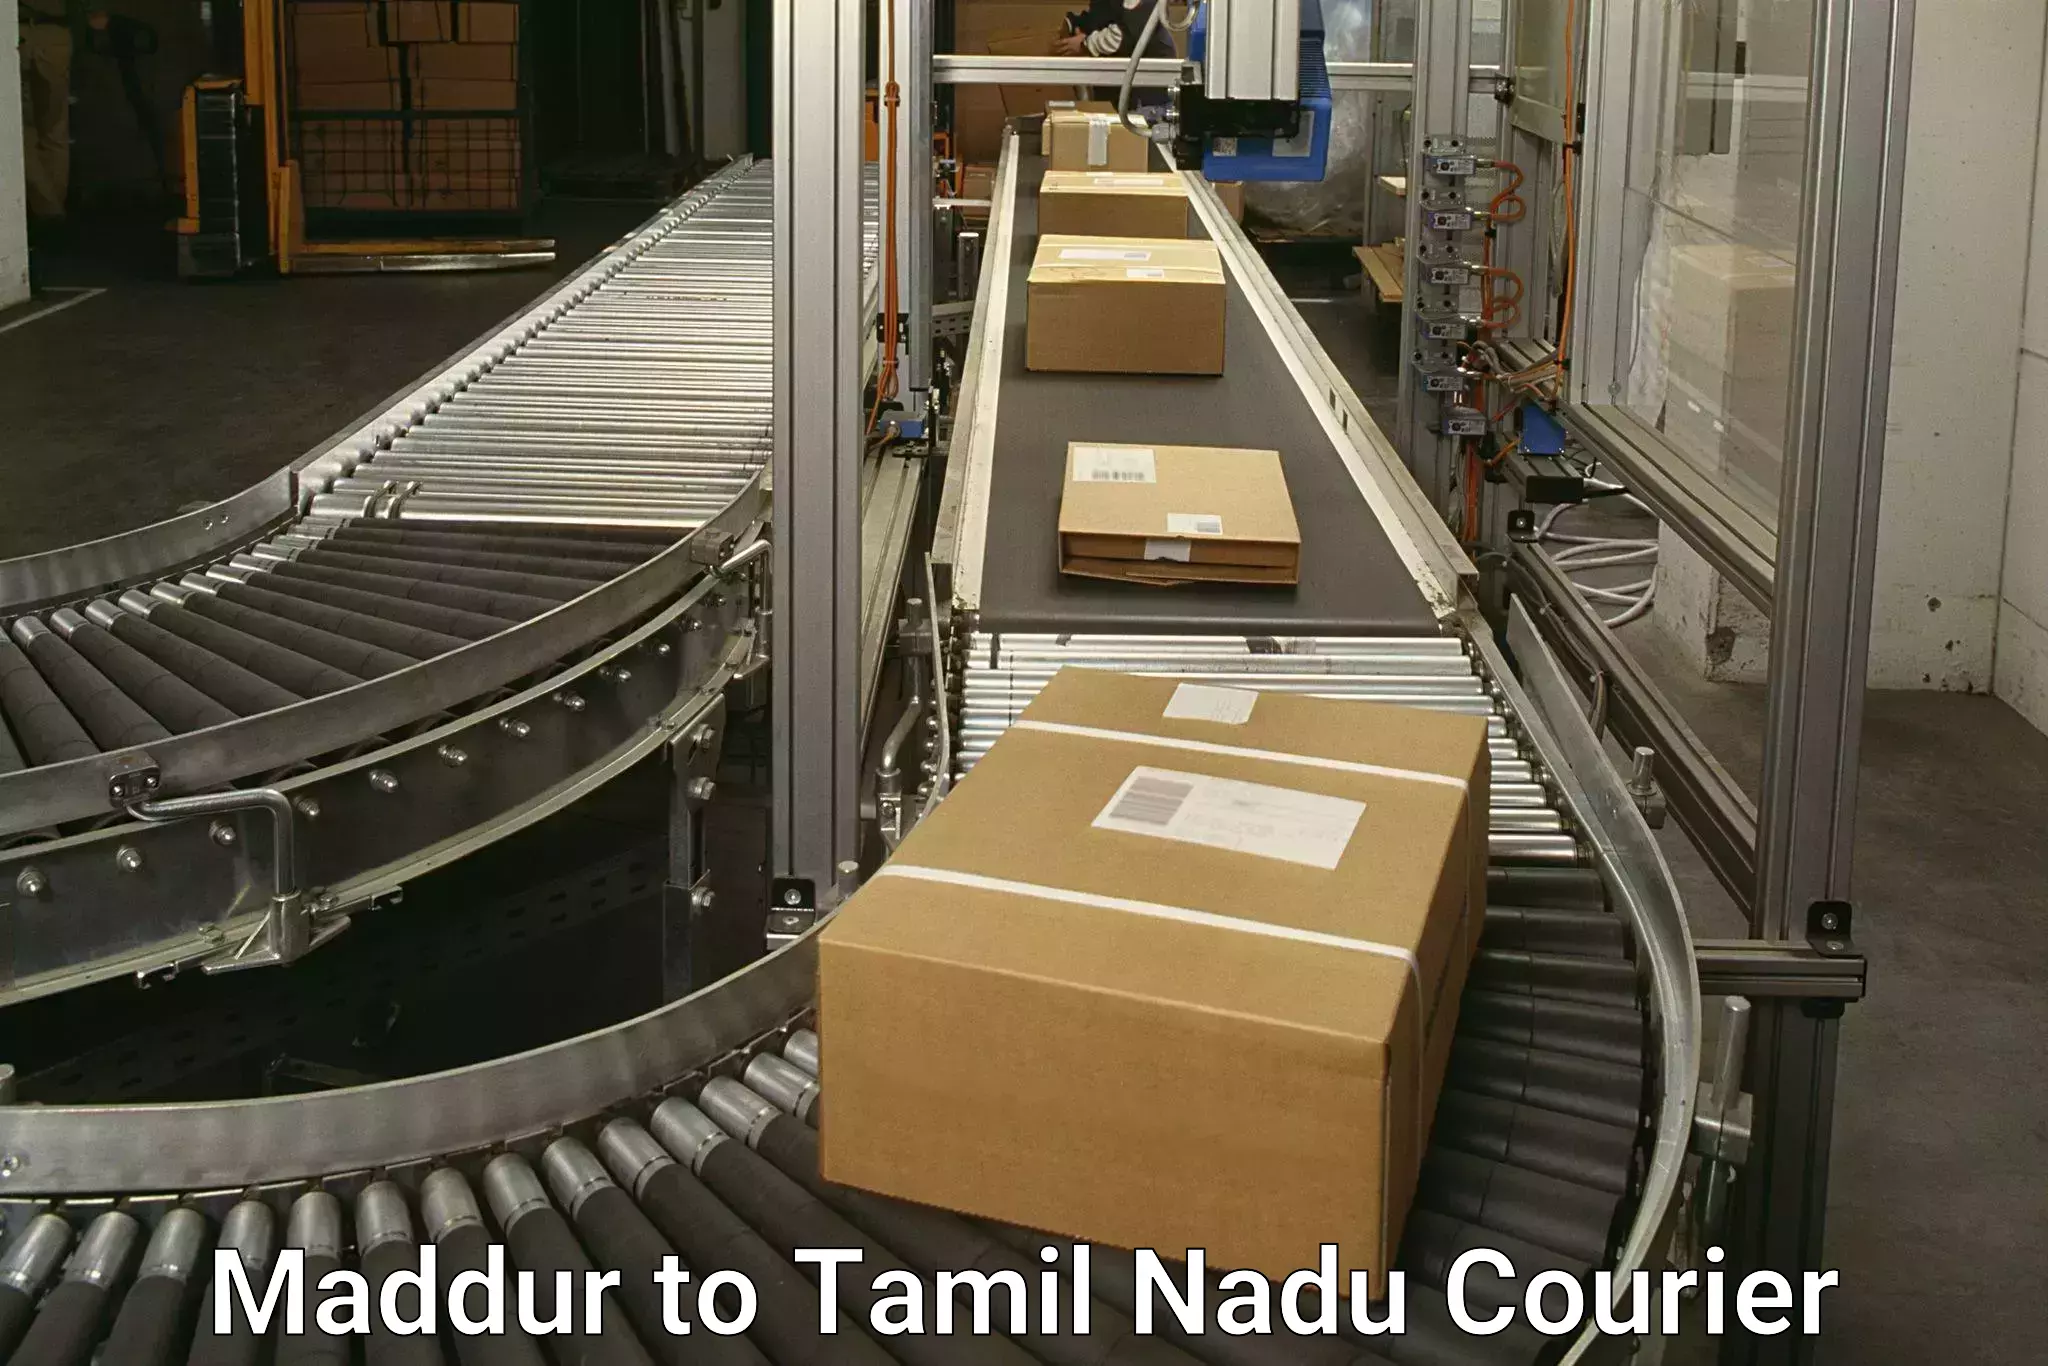 Global logistics network in Maddur to Tamil Nadu